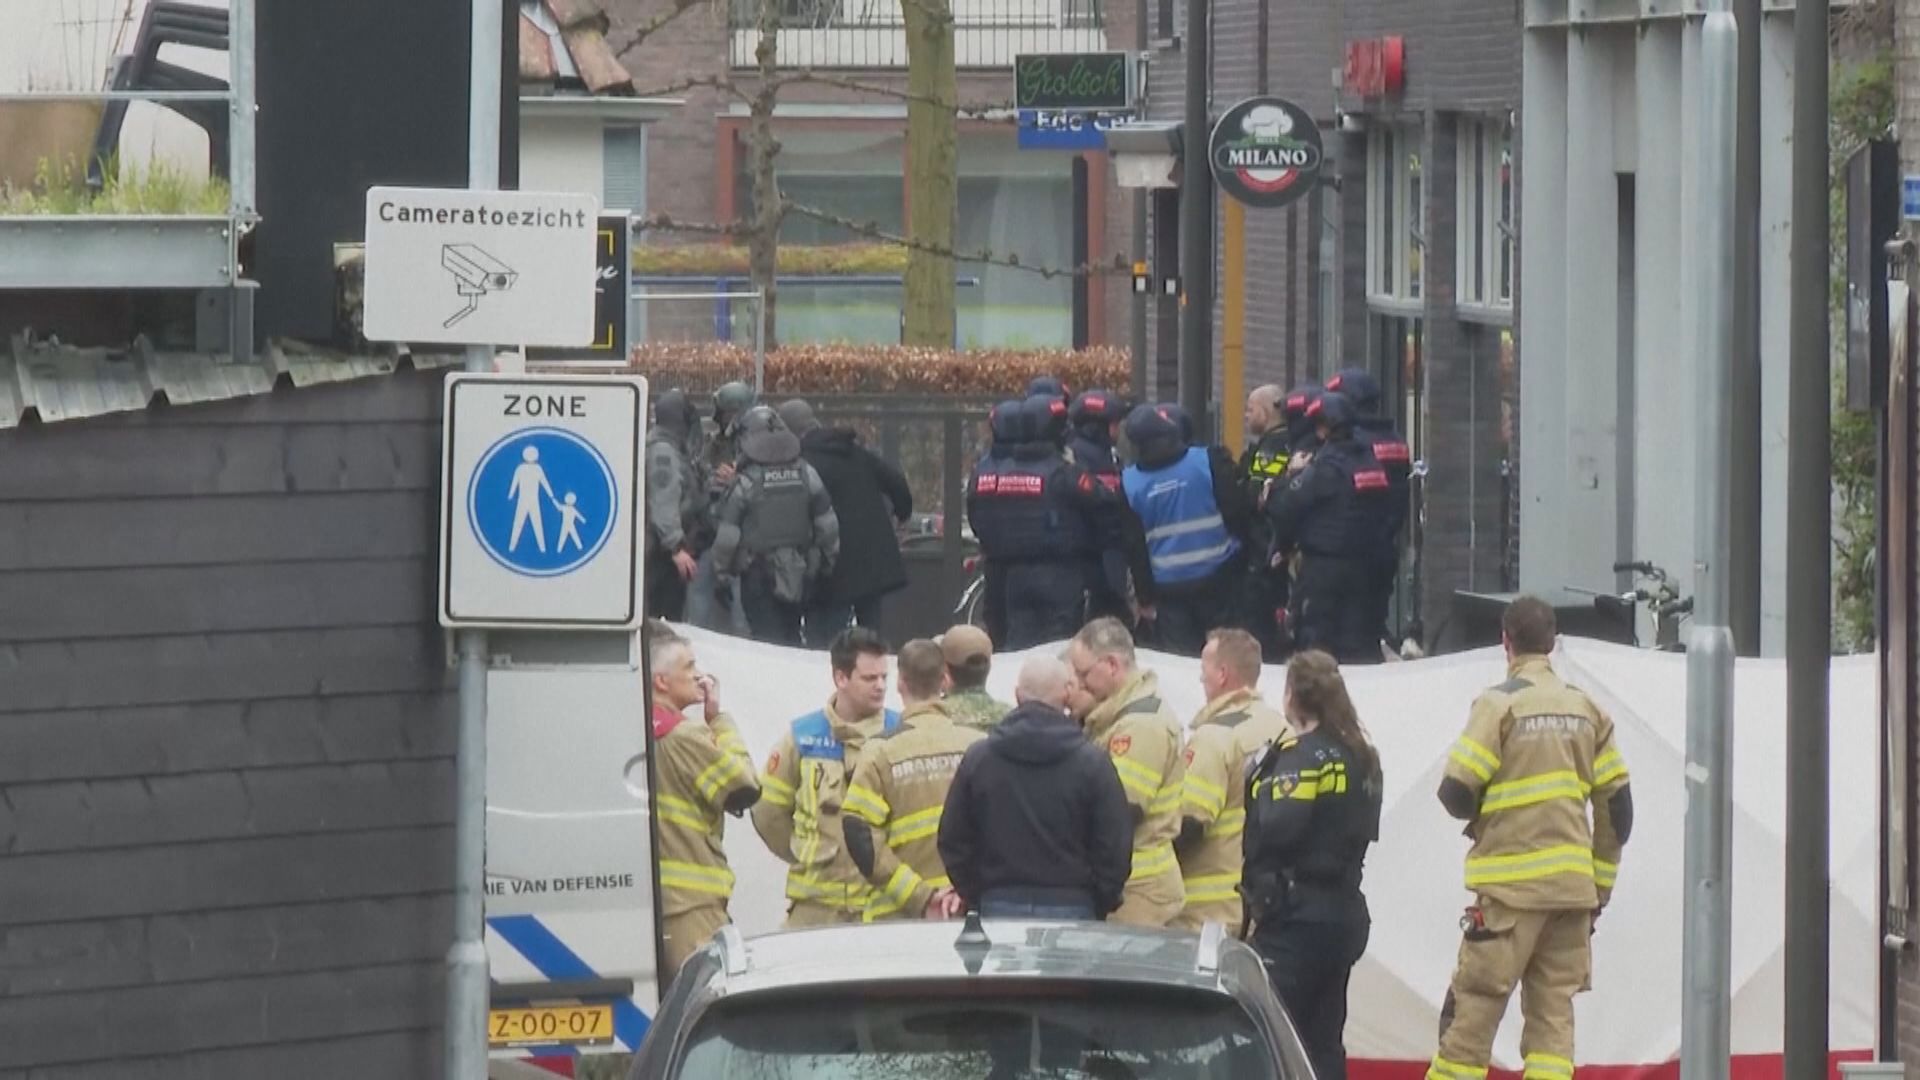 荷蘭東部一男子持械闖酒吧挾持多人 警方︰不涉恐襲